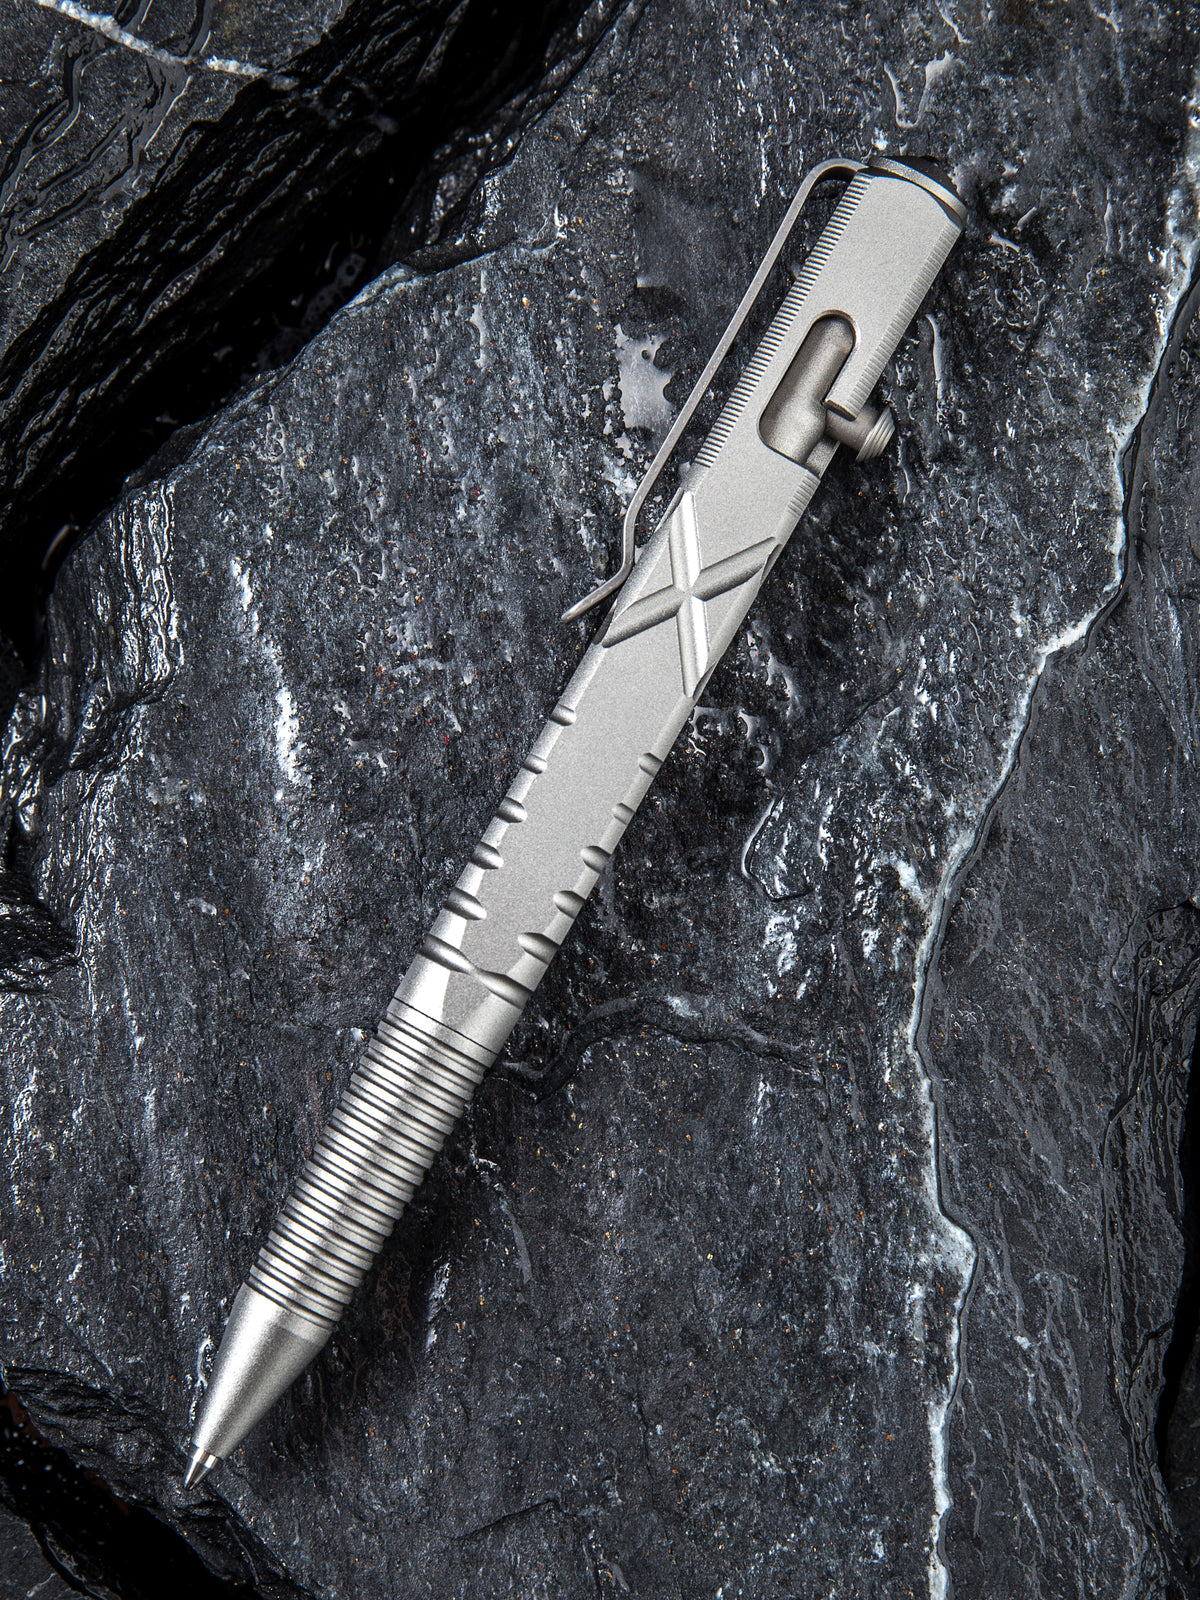 CIVIVI C-Quill | Gray Hard Anodized Aluminum Pen